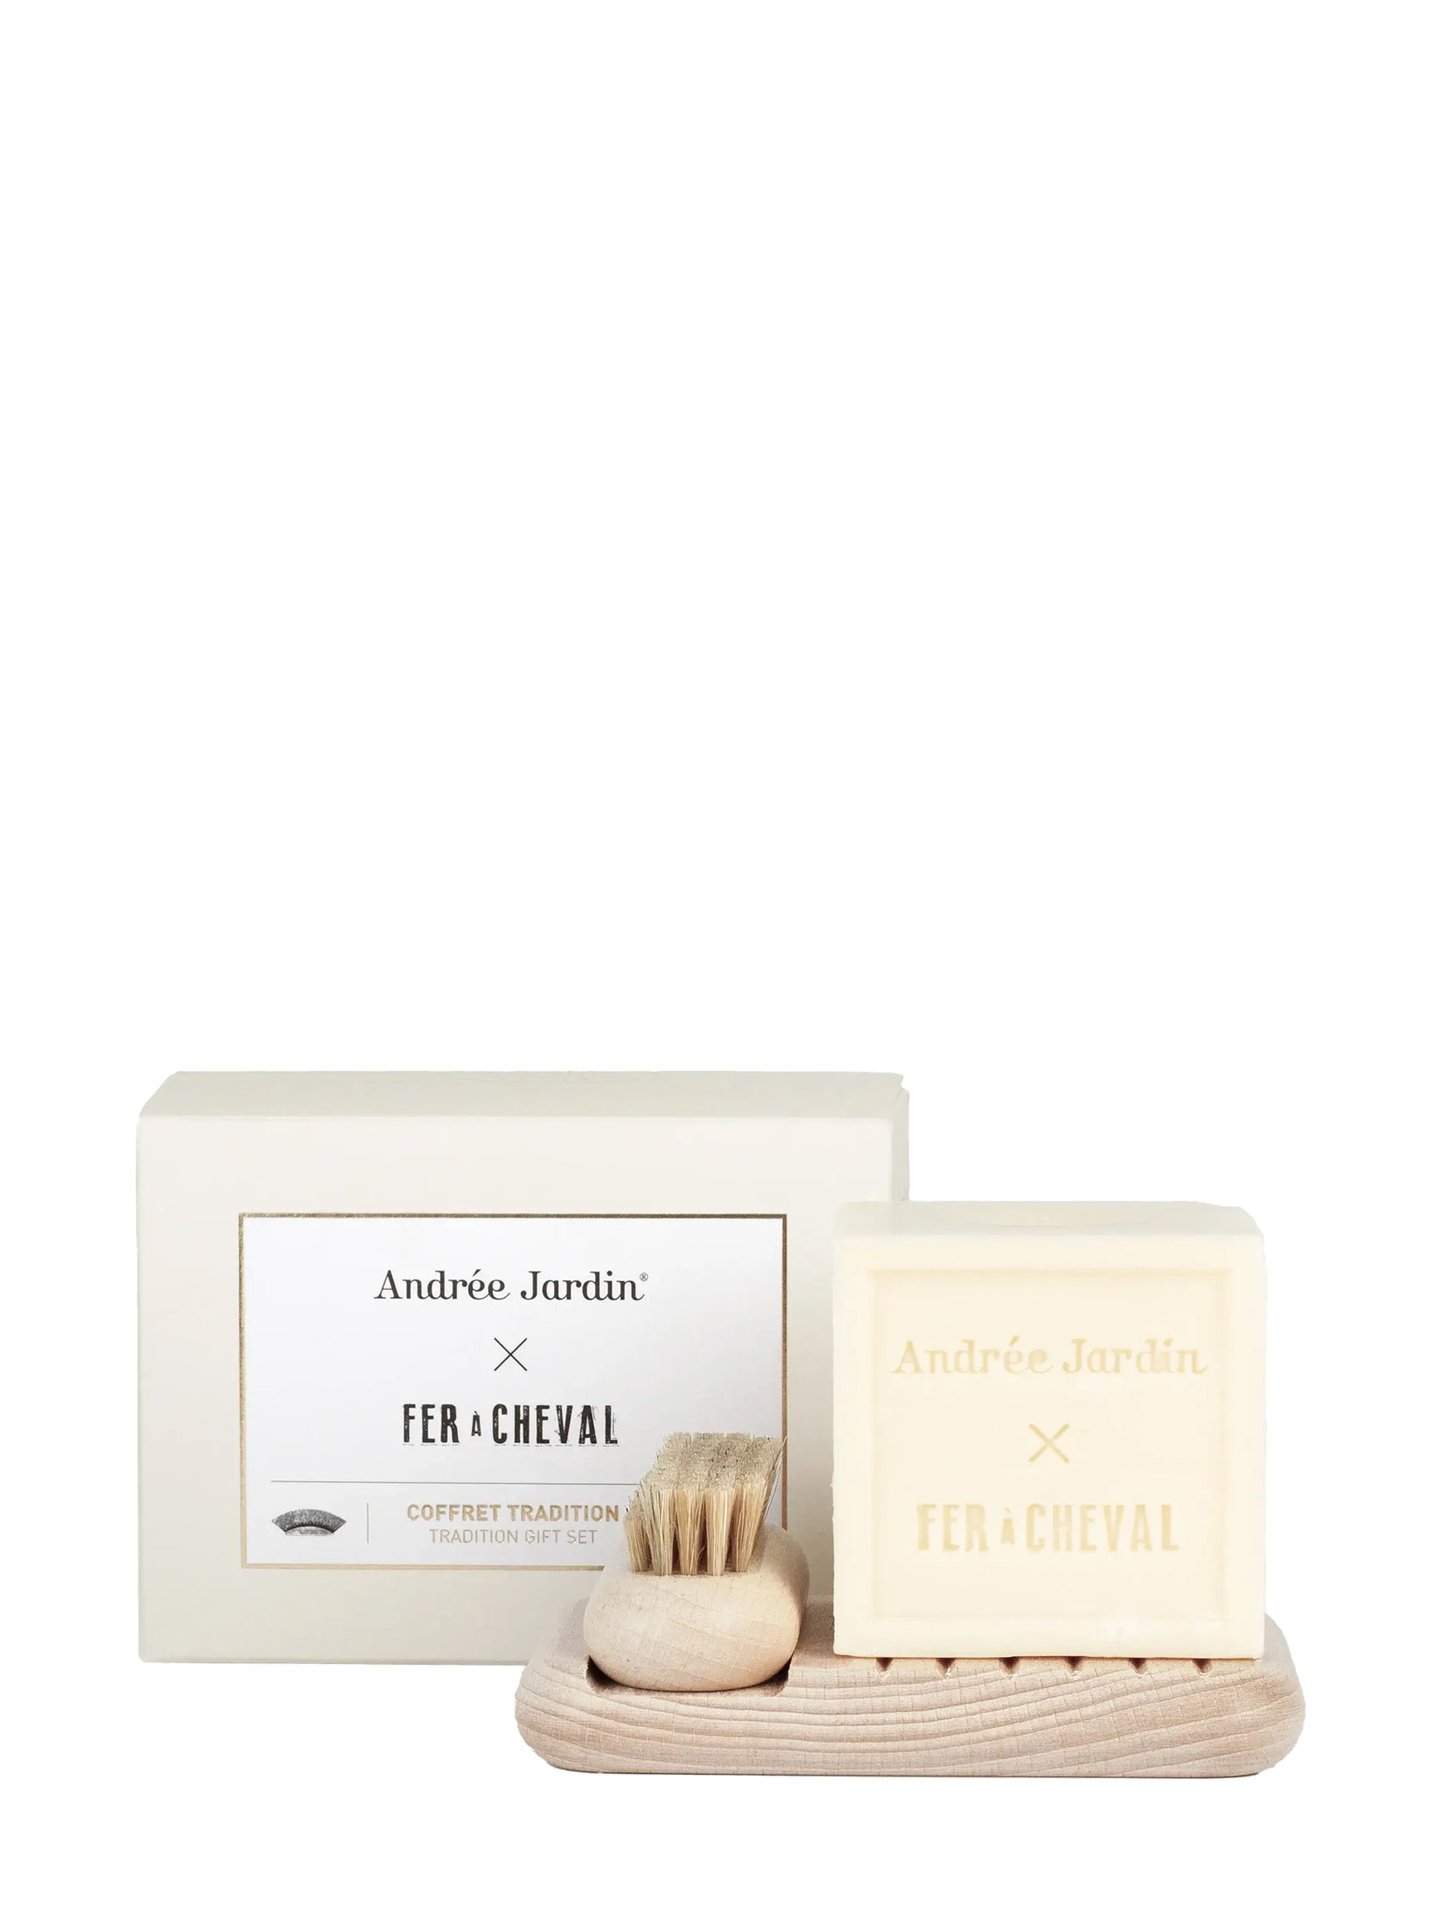 Andrée Jardin gift set, light wood w/ vegetable soap